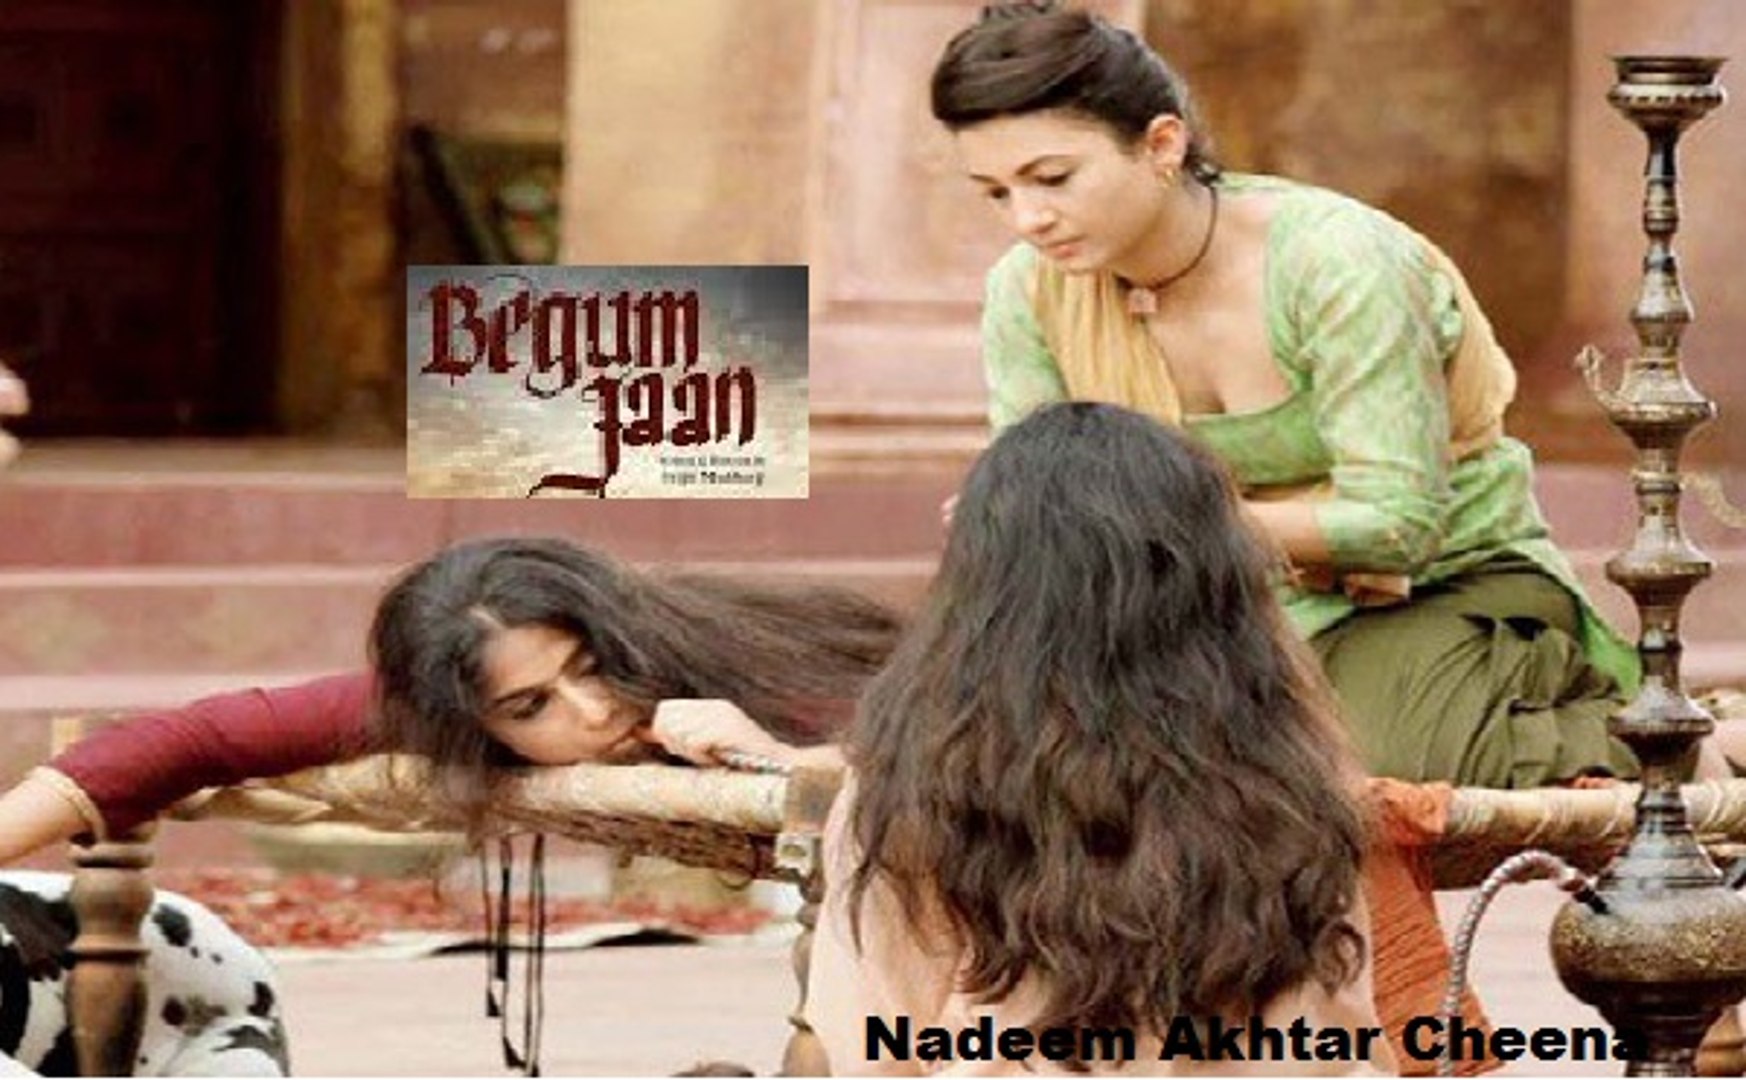 Begum jaan 2017 full movie watch online free hd dailymotion Begum Jaan Vidya Balan Srijit Mukherji Movie 2017 Trailer Hd Video Dailymotion Video Dailymotion